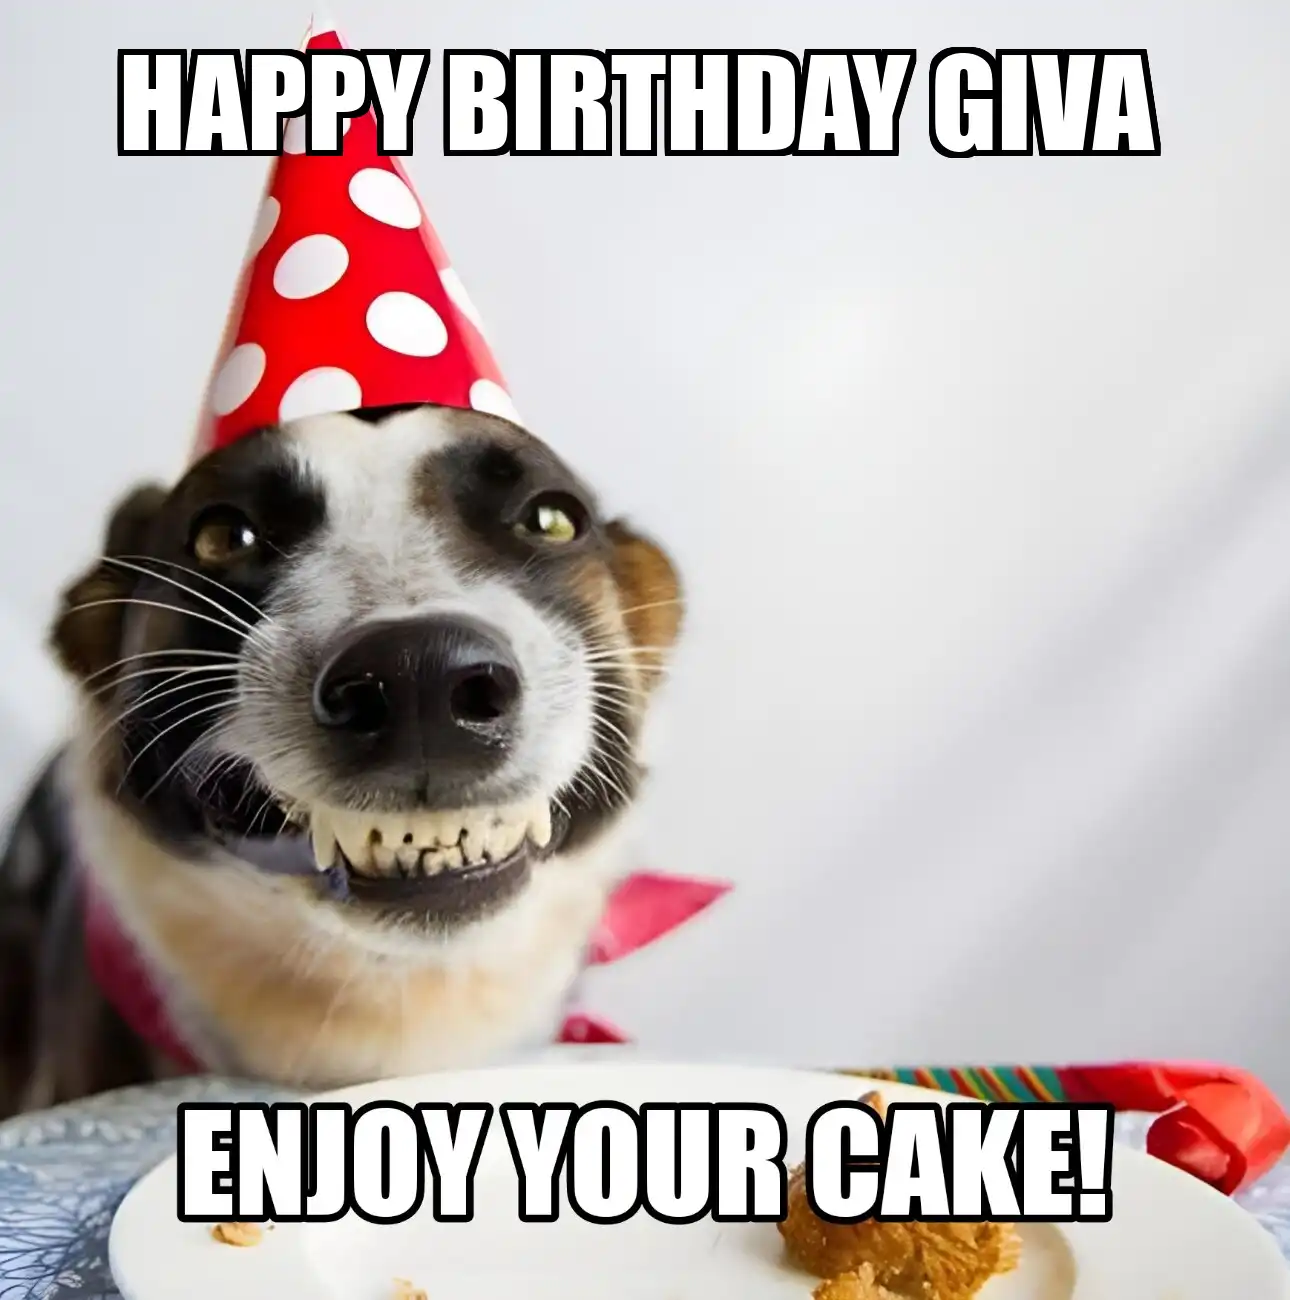 Happy Birthday Giva Enjoy Your Cake Dog Meme